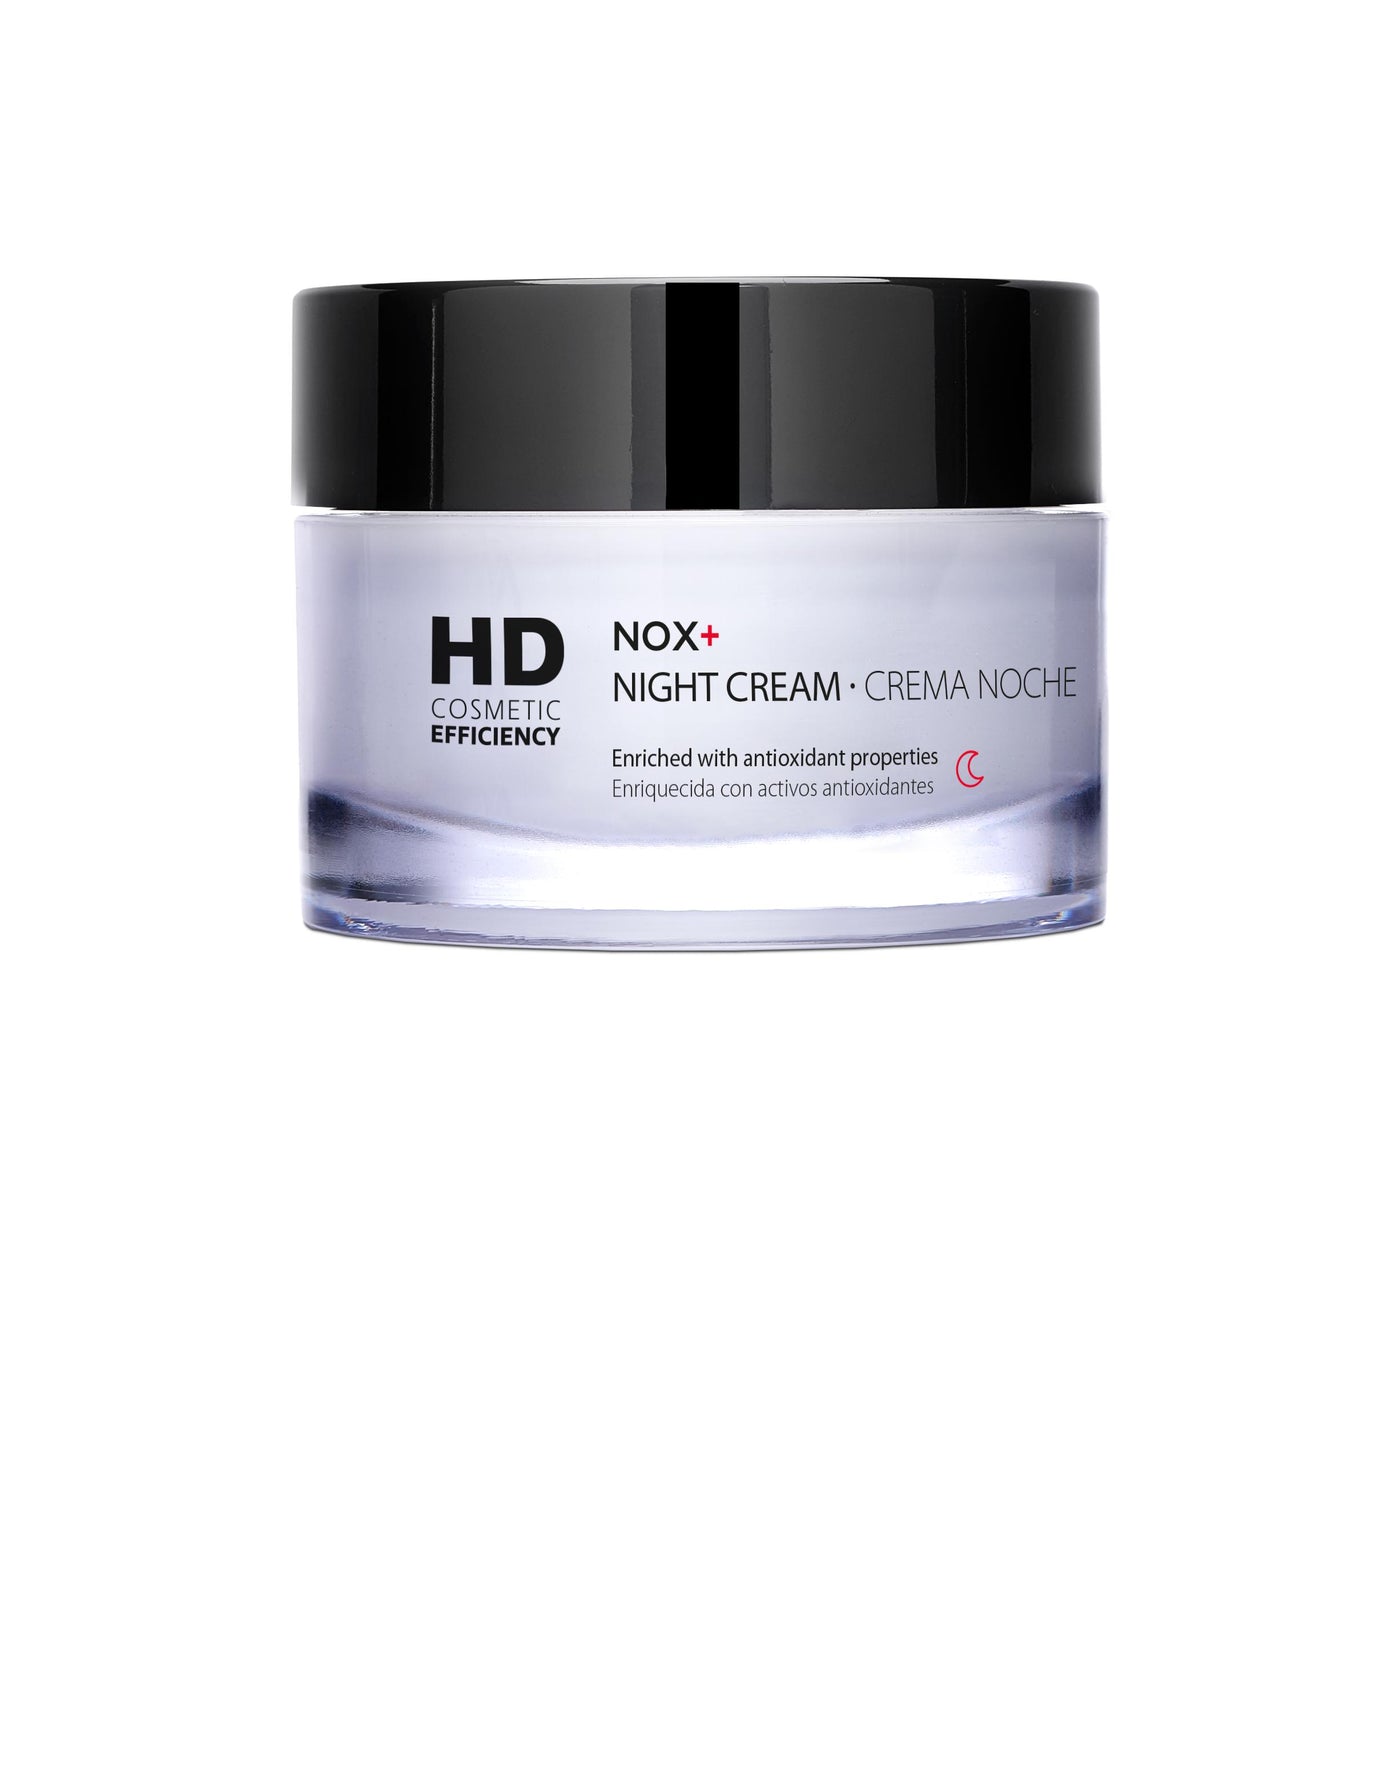 HD COSMETIC EFFICIENCY NOX+ CREMA DE NOCHE 50 ML | The Glow Shop